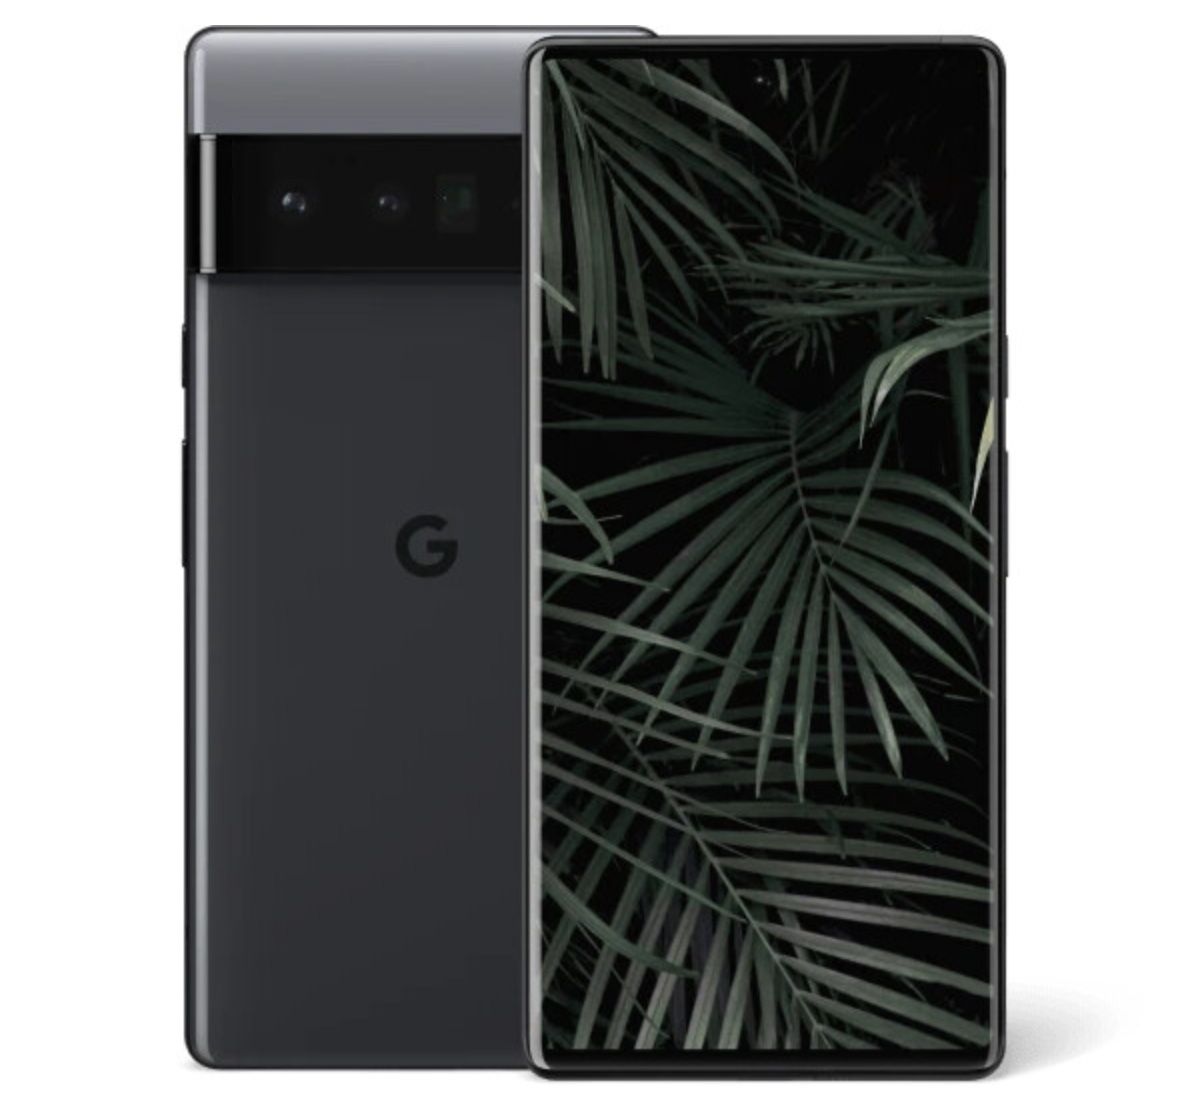 Magenta Young: Google Pixel 6 Pro für 4,99€ + Telekom Allnet Flat mit 39GB LTE/5G für 34,95€ mtl.